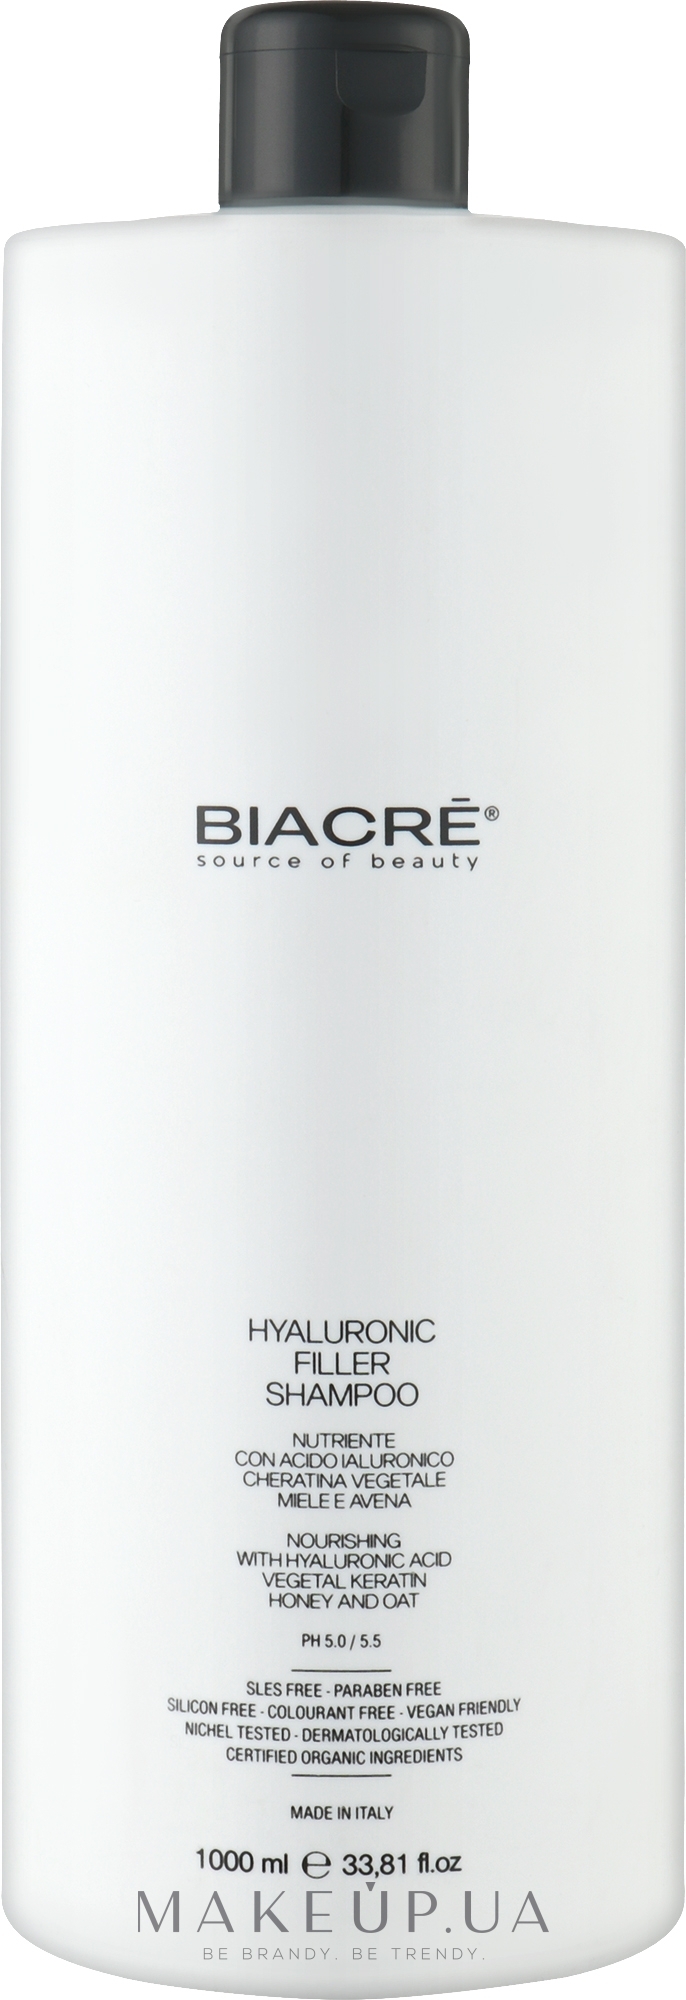 Зміцнювальний гіалуроновий філер-шампунь - Biacre Hyaluronic Filler Shampoo — фото 1000ml